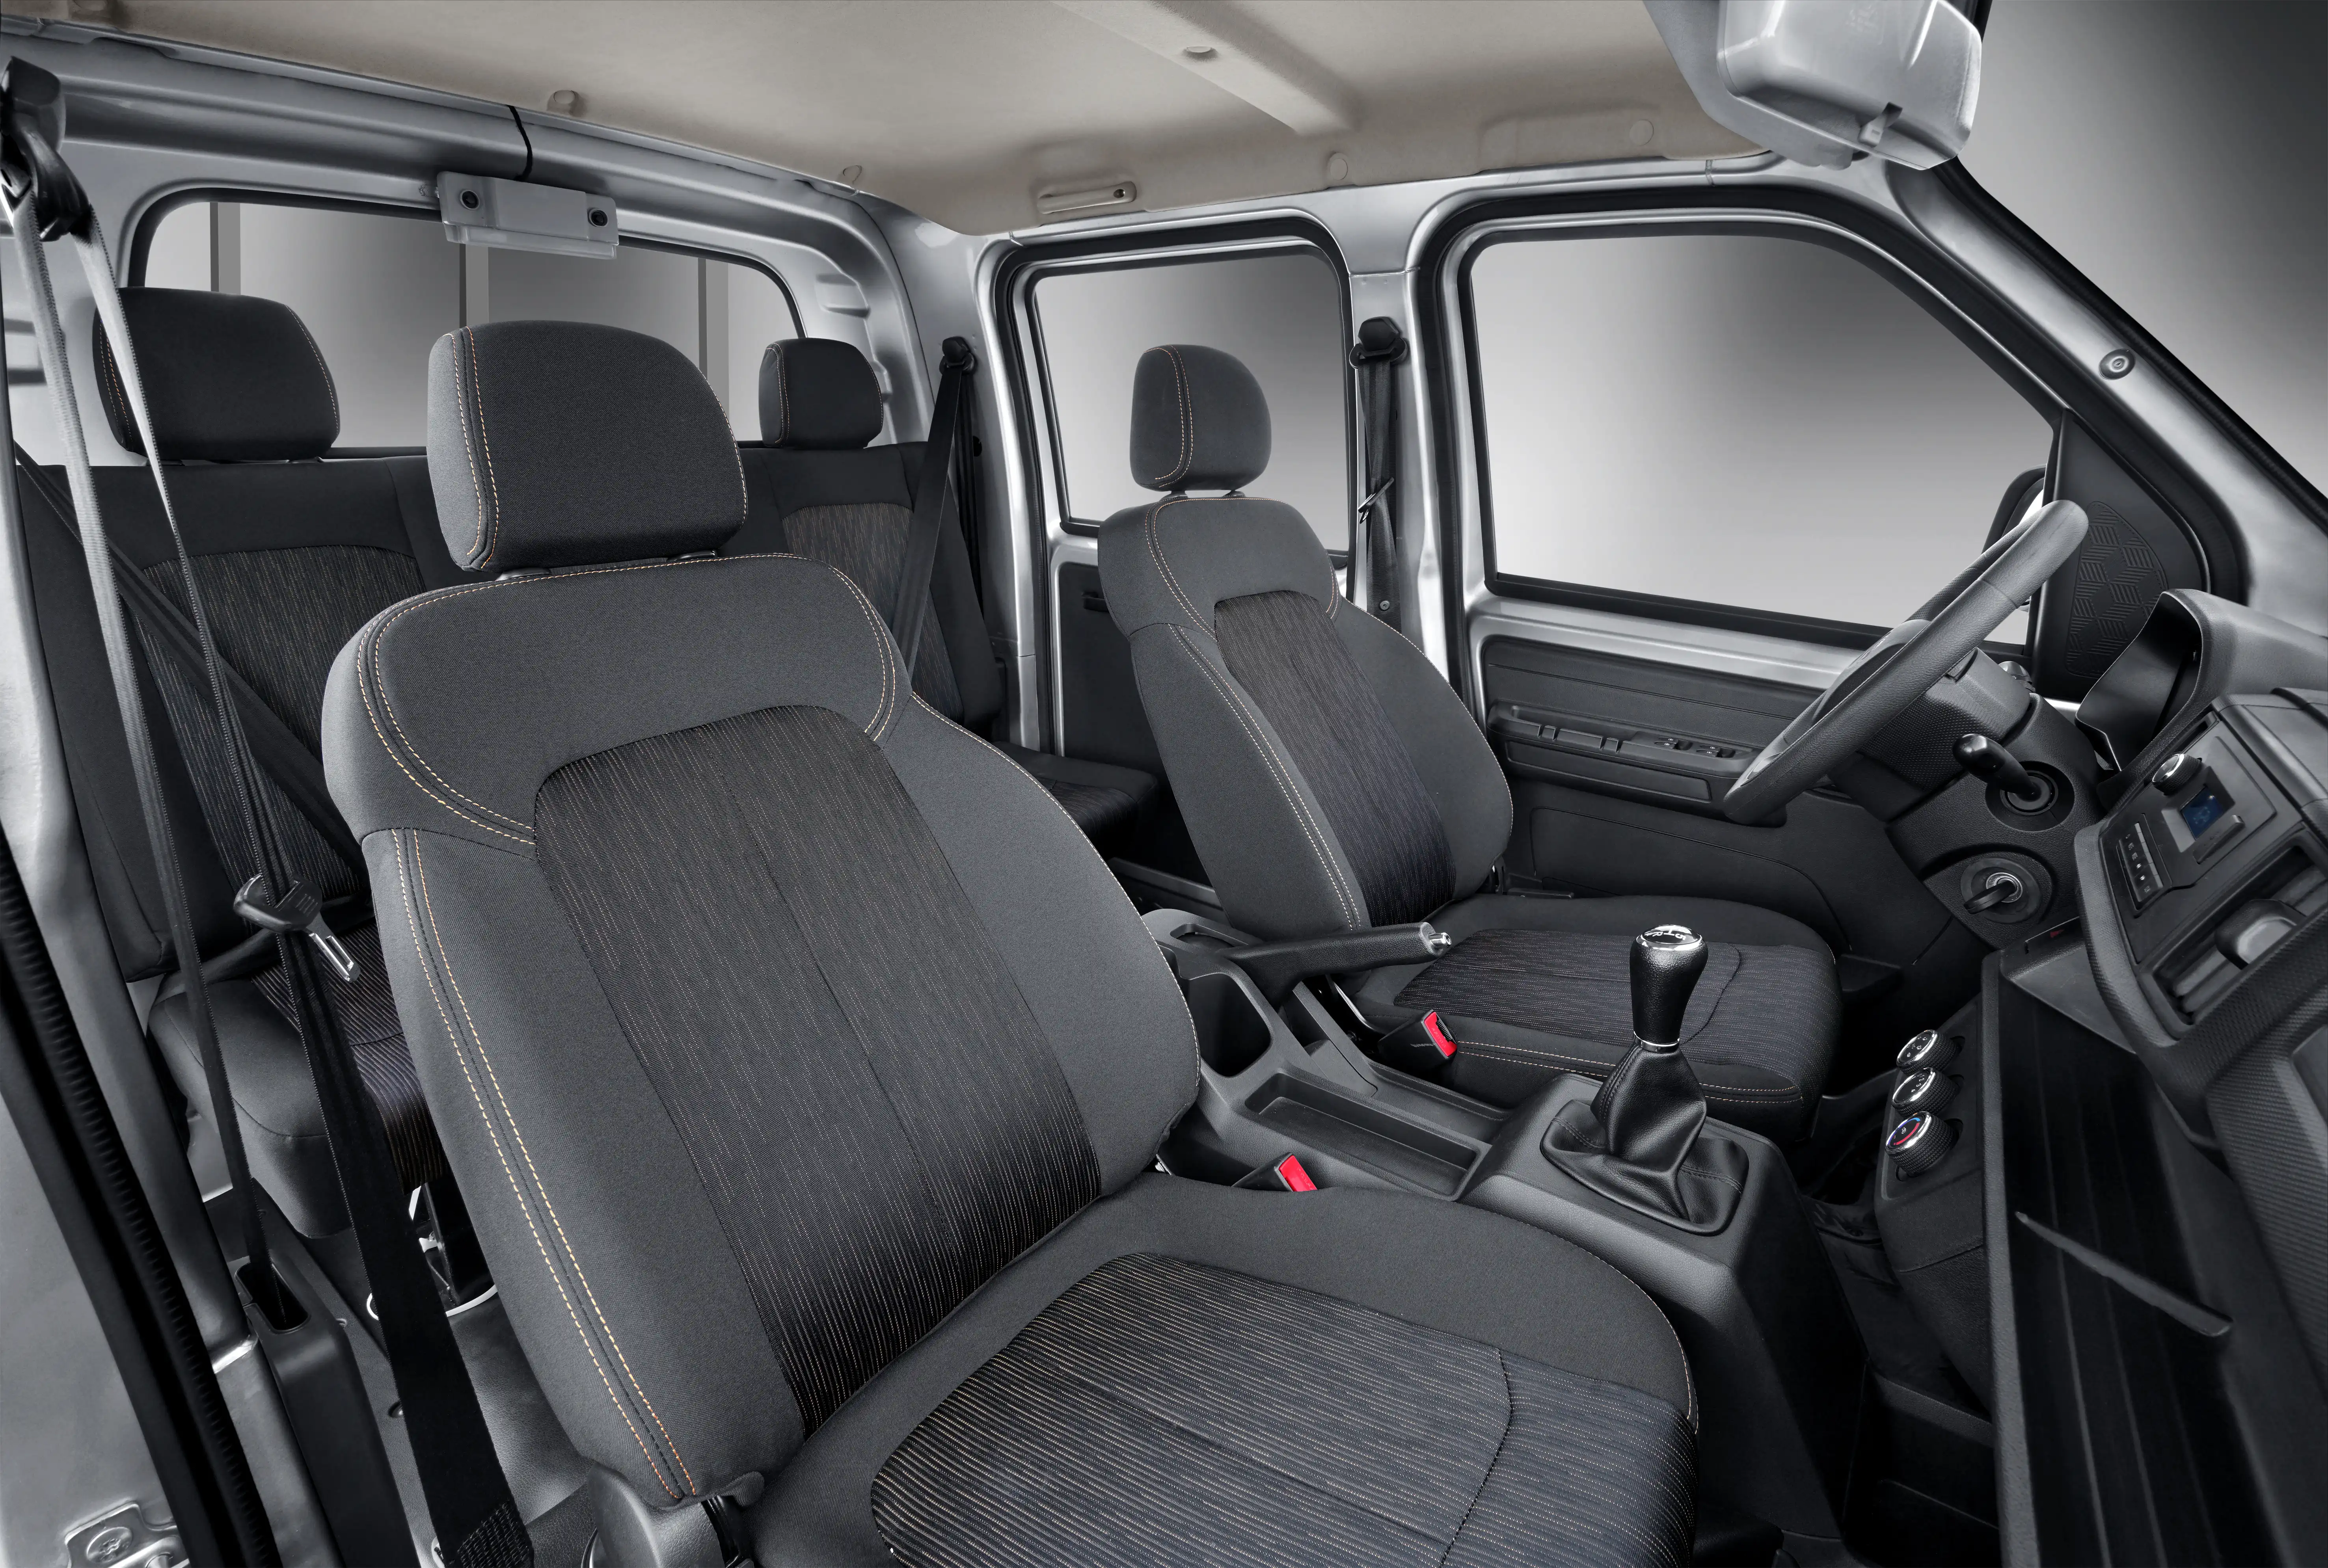 Vista interior del Karry Q52 Cabina Doble, mostrando el tablero y los asientos cómodos